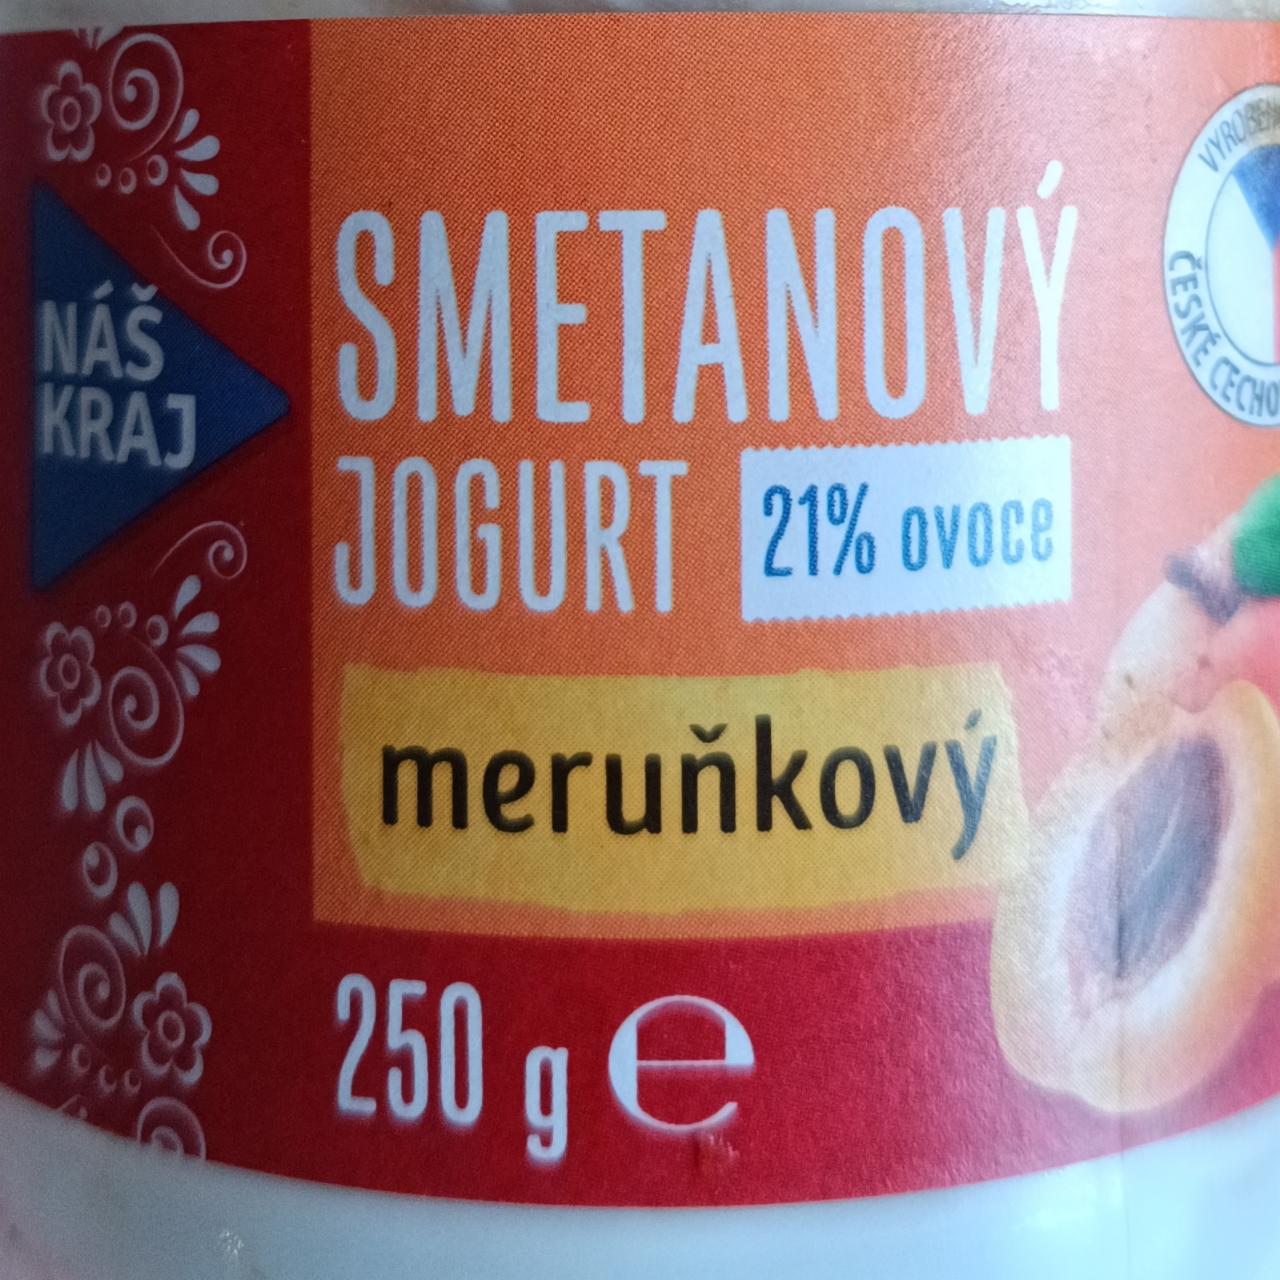 Fotografie - Smetanový jogurt meruňkový 21% ovoce Náš kraj